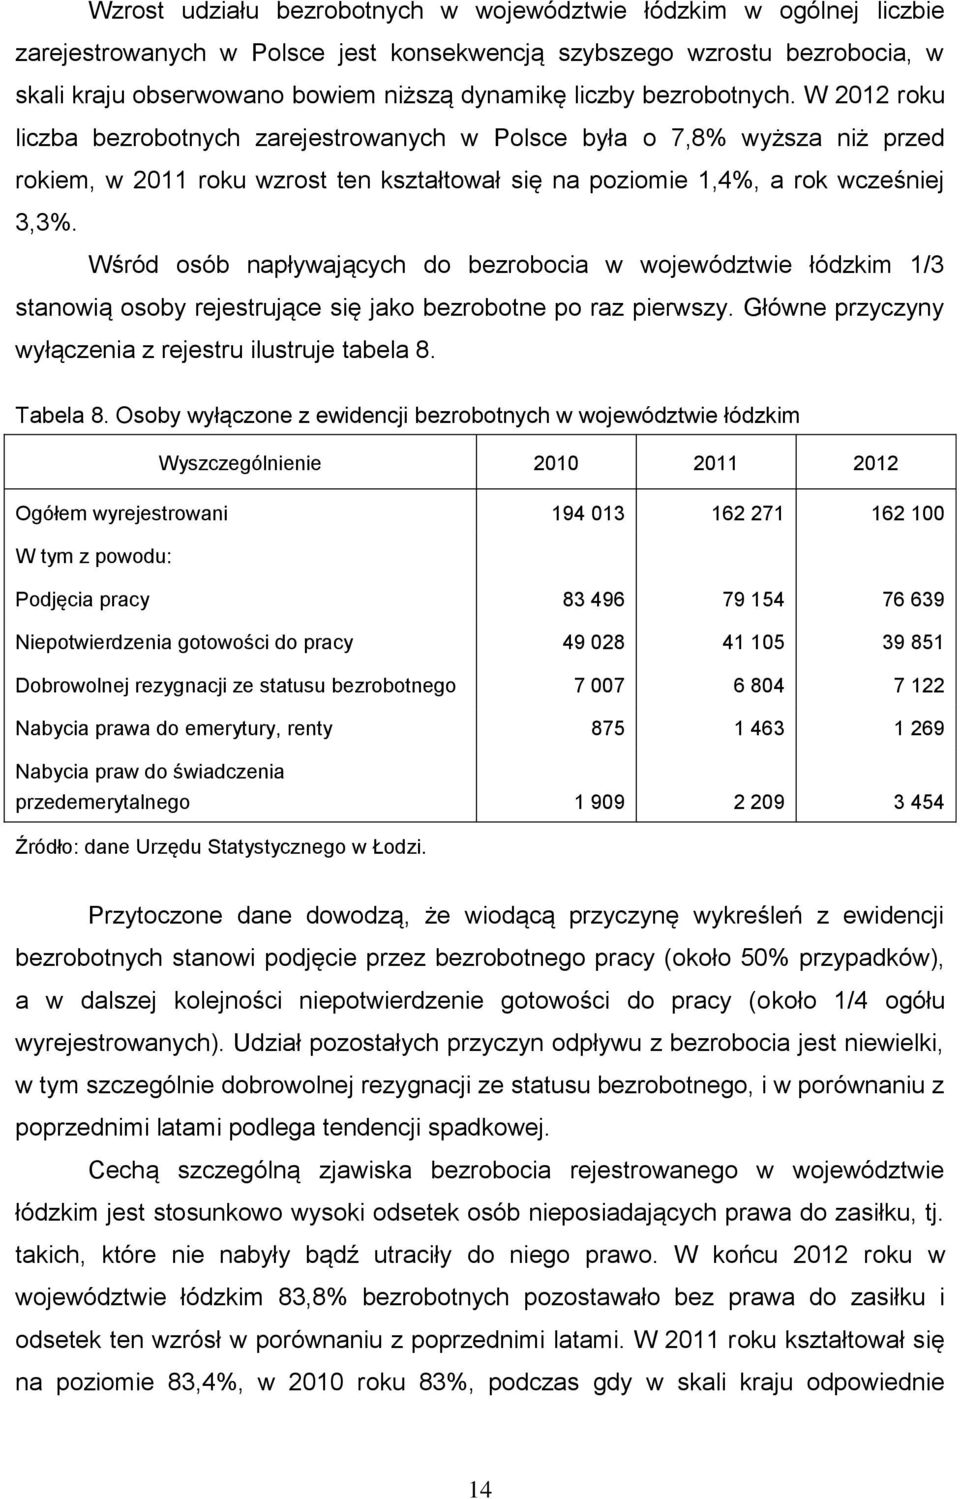 Wśród osób napływających do bezrobocia w województwie łódzkim 1/3 stanowią osoby rejestrujące się jako bezrobotne po raz pierwszy. Główne przyczyny wyłączenia z rejestru ilustruje tabela 8. Tabela 8.